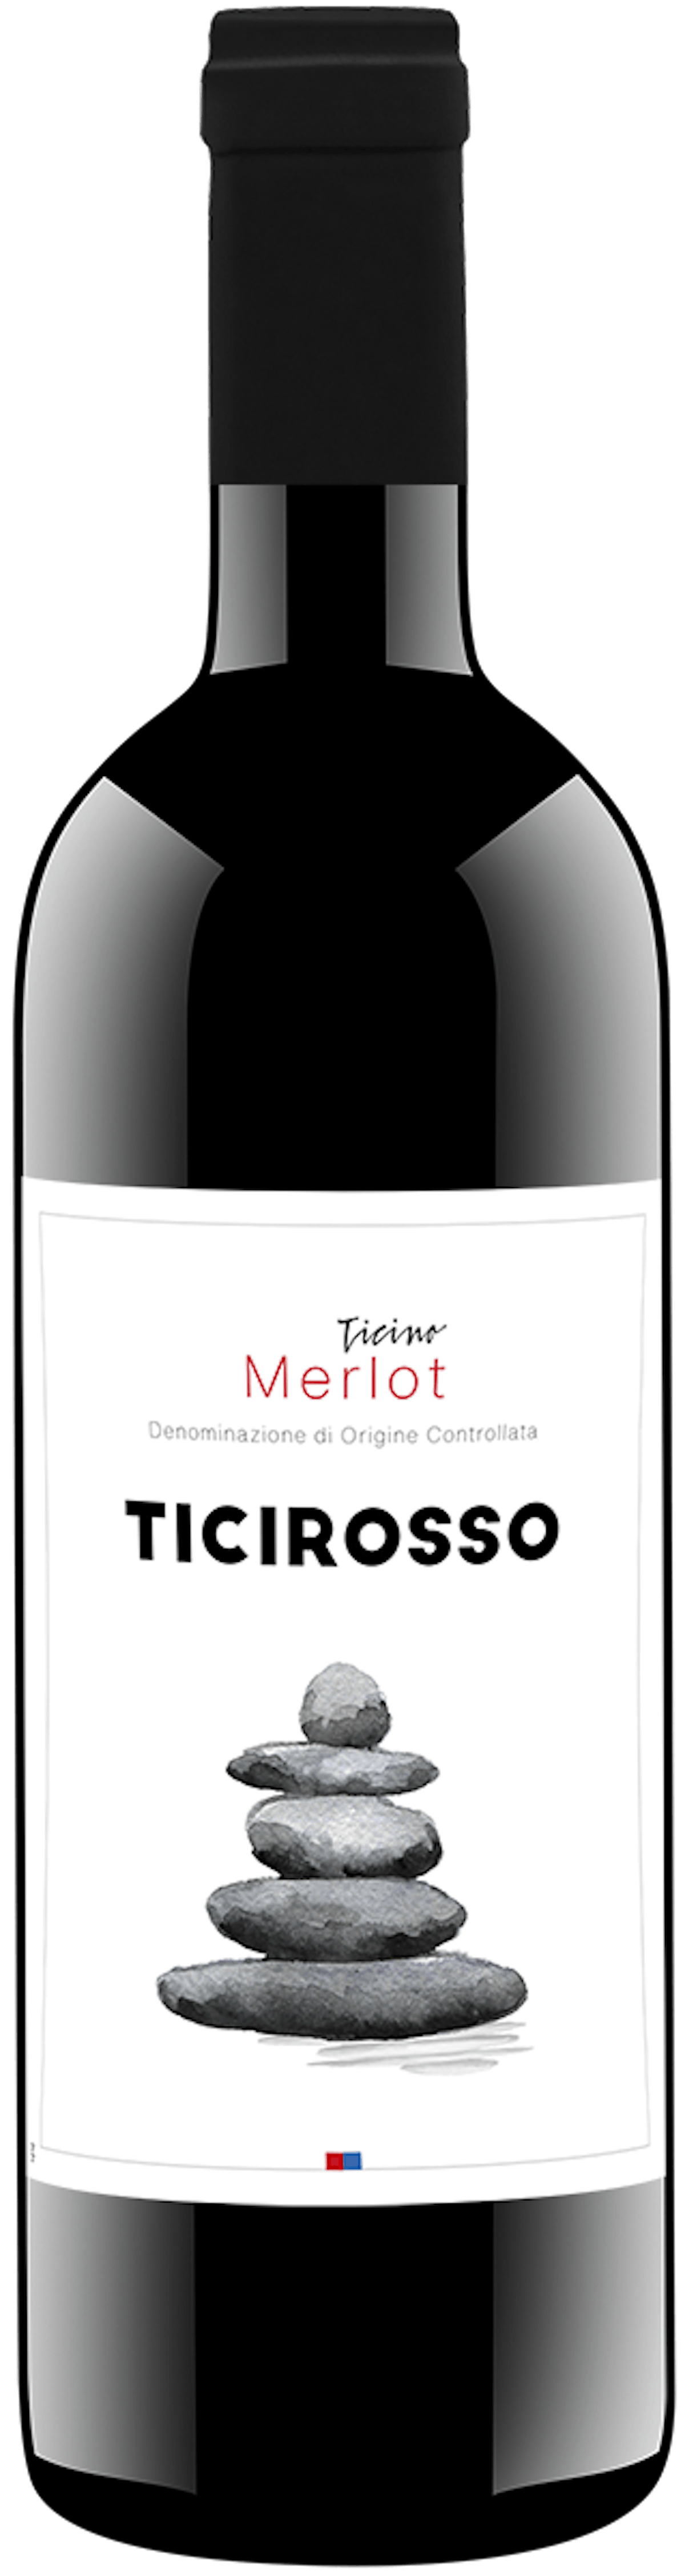 Ticirosso Merlot Ticino